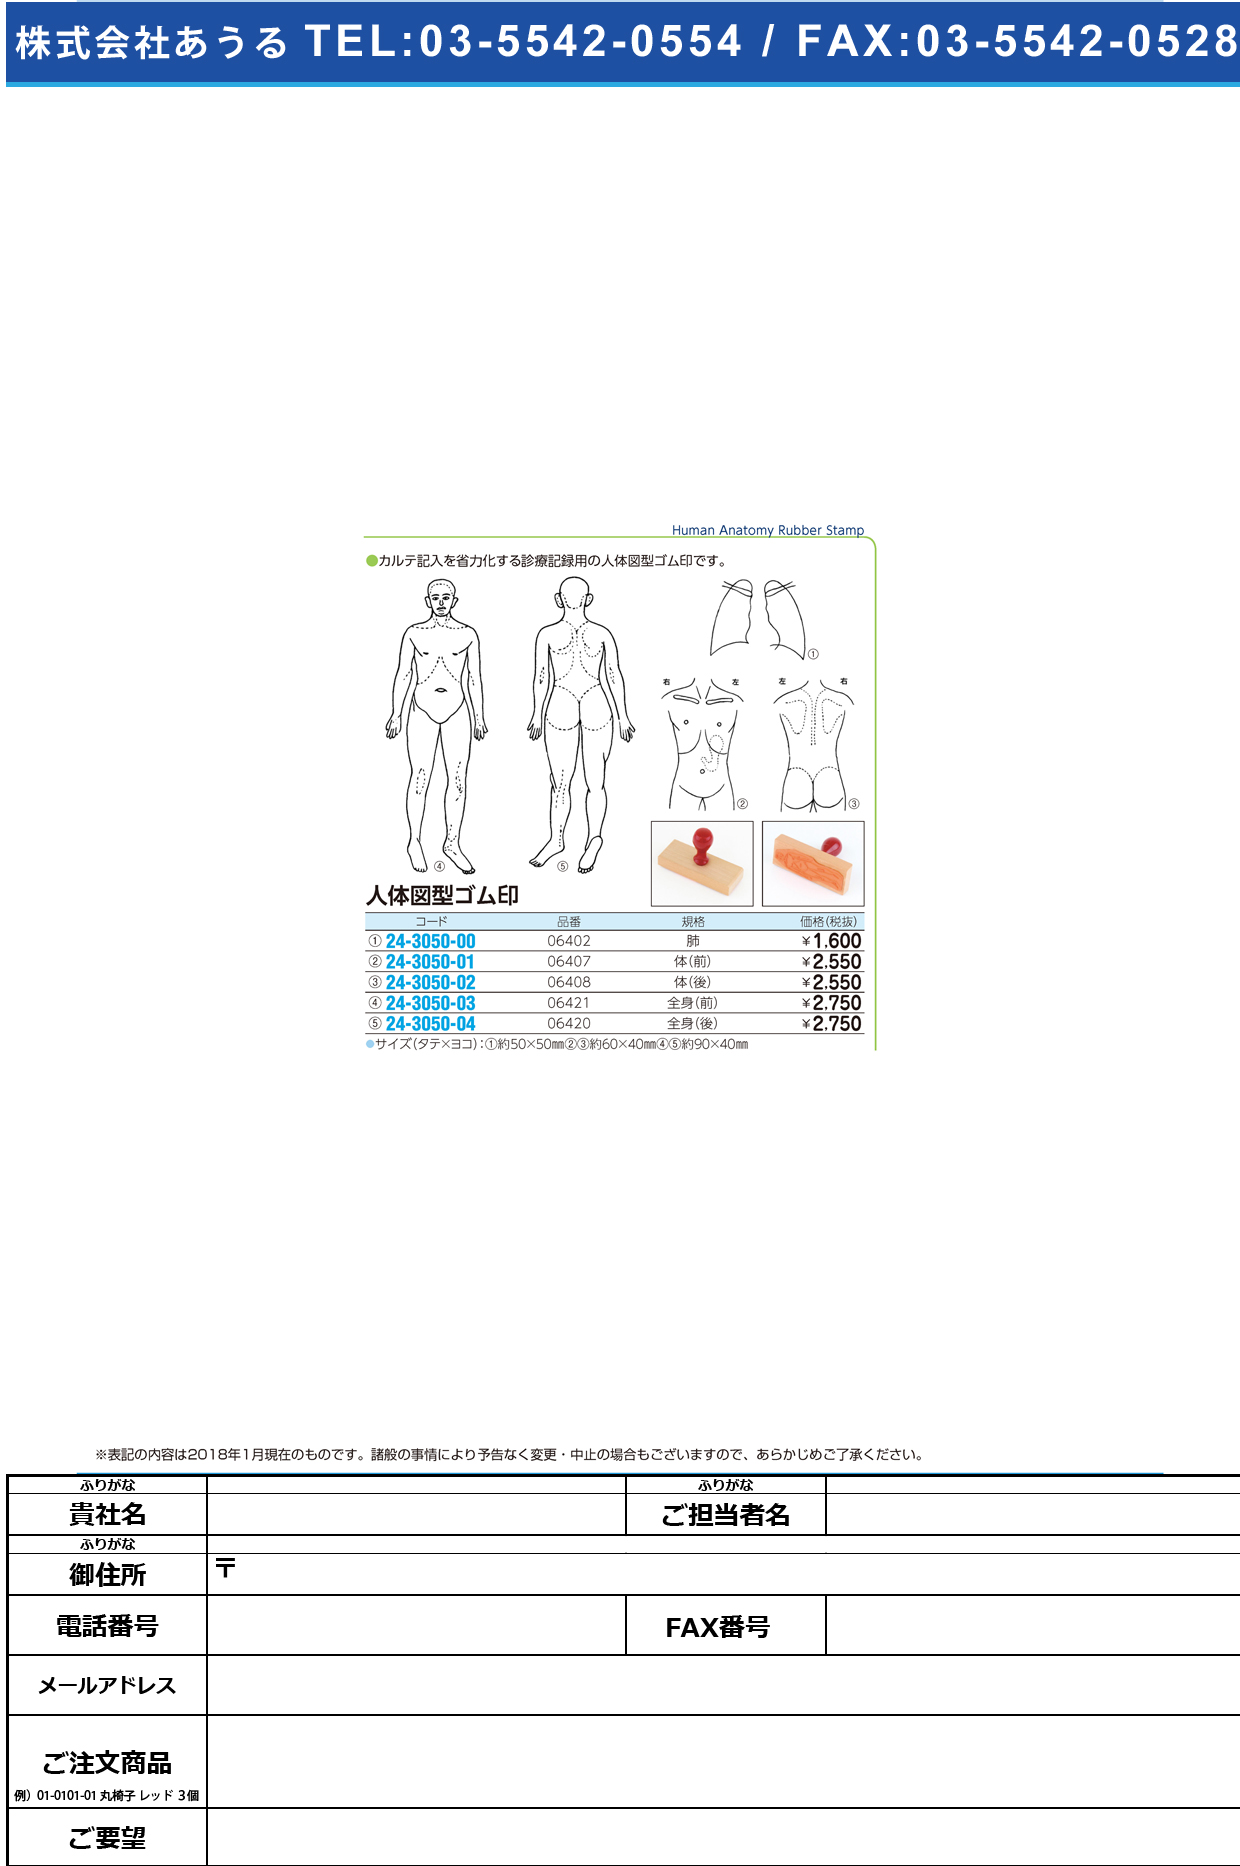 (24-3050-03)人体図型ゴム印 06421 ｼﾞﾝﾀｲｽﾞｹｲｺﾞﾑｲﾝ【1個単位】【2019年カタログ商品】